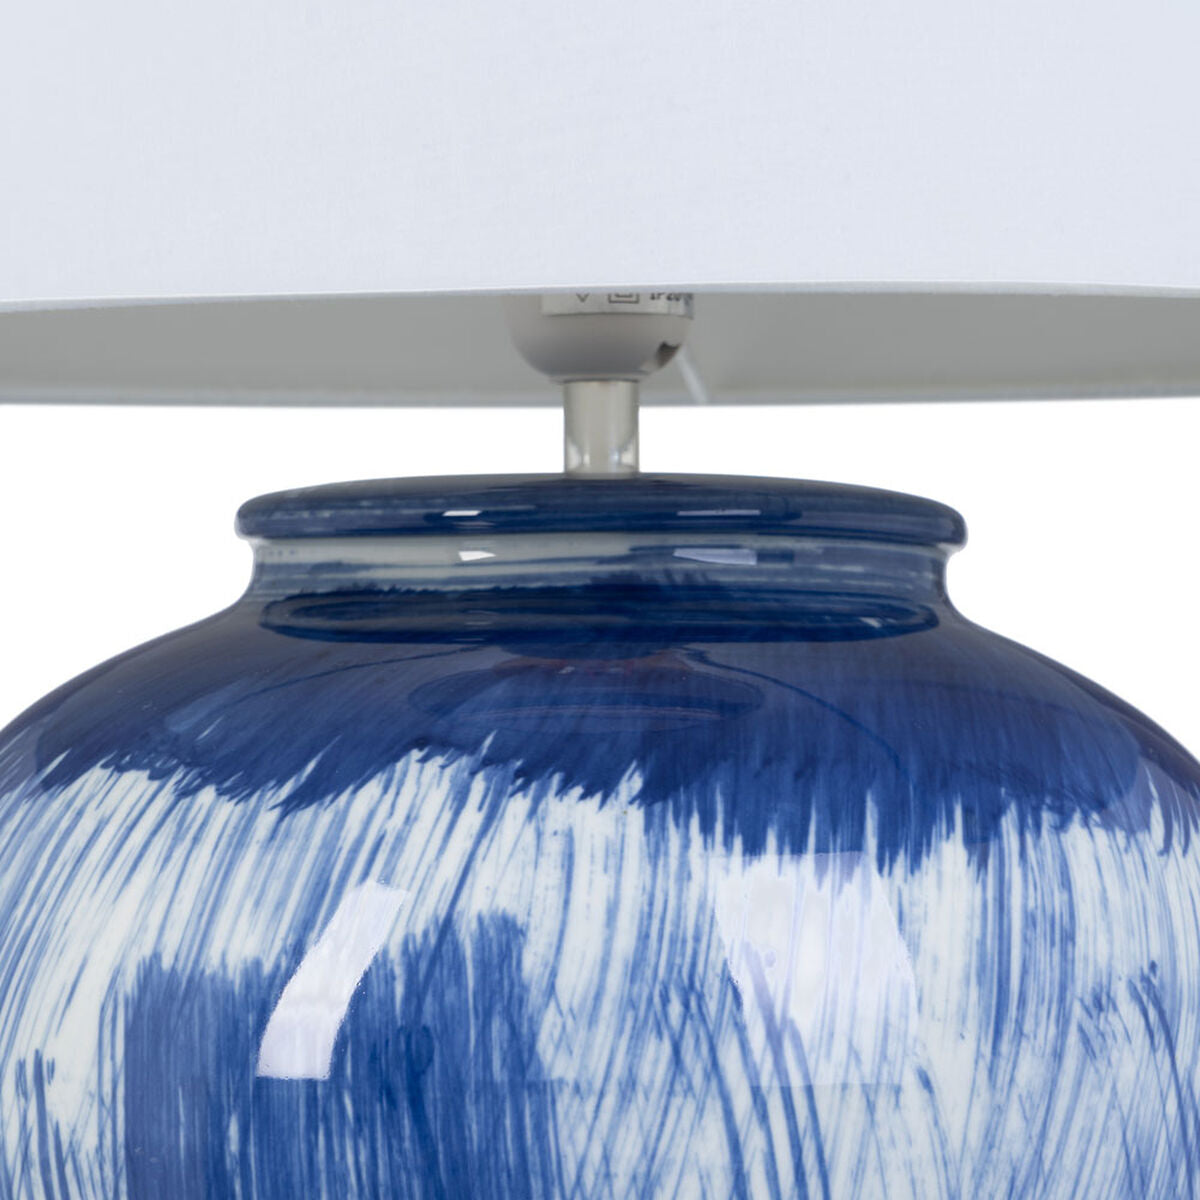 Desk lamp Blue Ceramic 40 W 220 V 240 V 220-240 V 41 x 41 x 76 cm